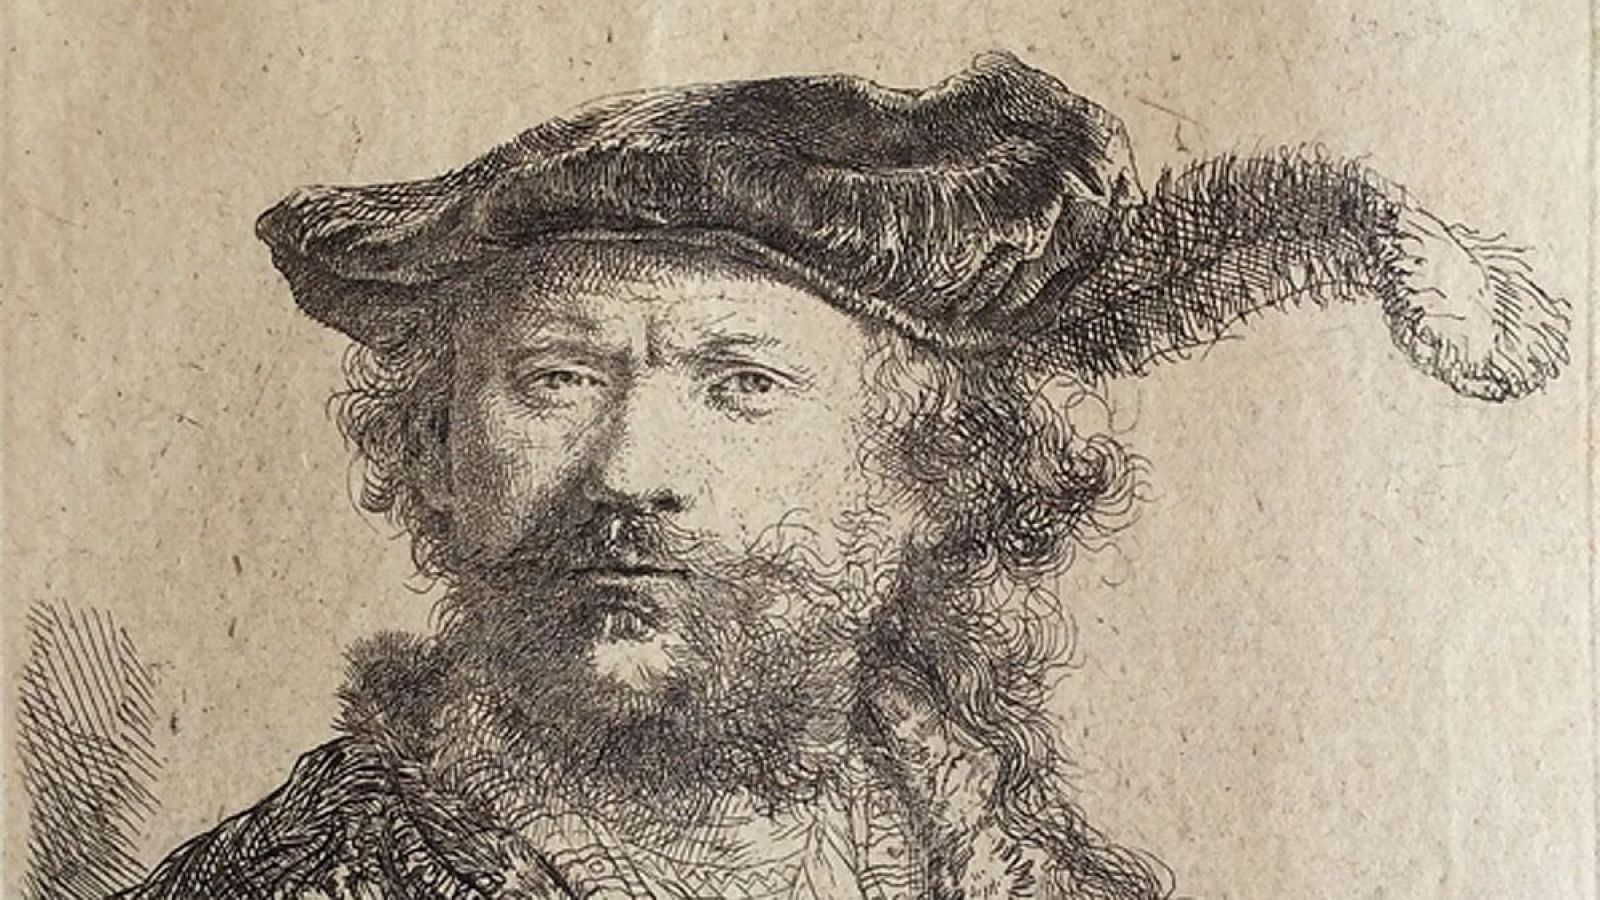 Autorretrato, 1638.Rembrandt van Rijn. Museo Lázaro Galdiano.